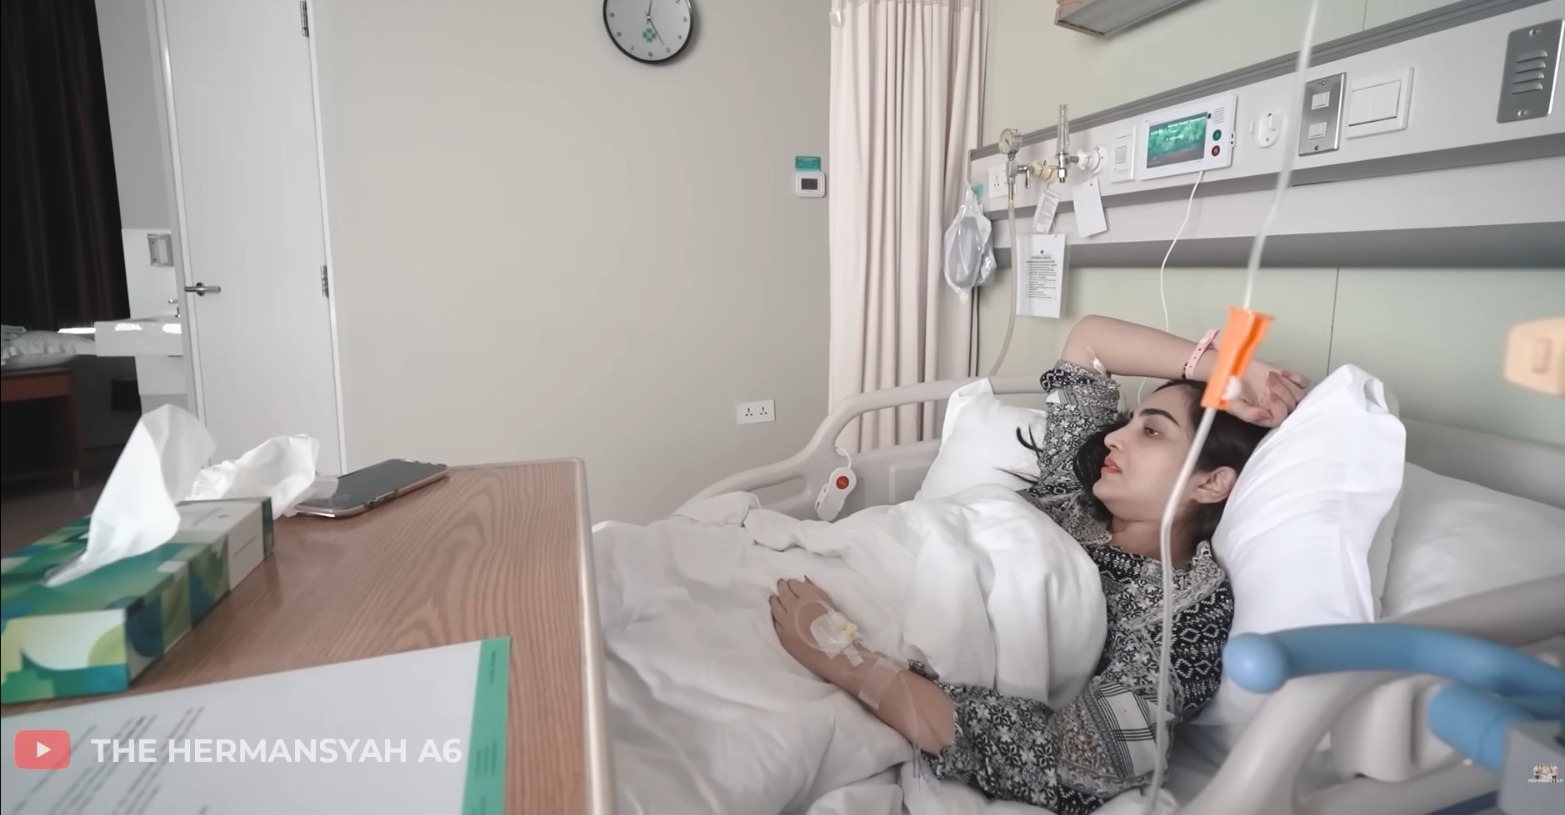 Ashanty Ungkap Kondisi Kesehatannya Pasca Dilarikan ke Rumah Sakit Karena Sesak Nafas